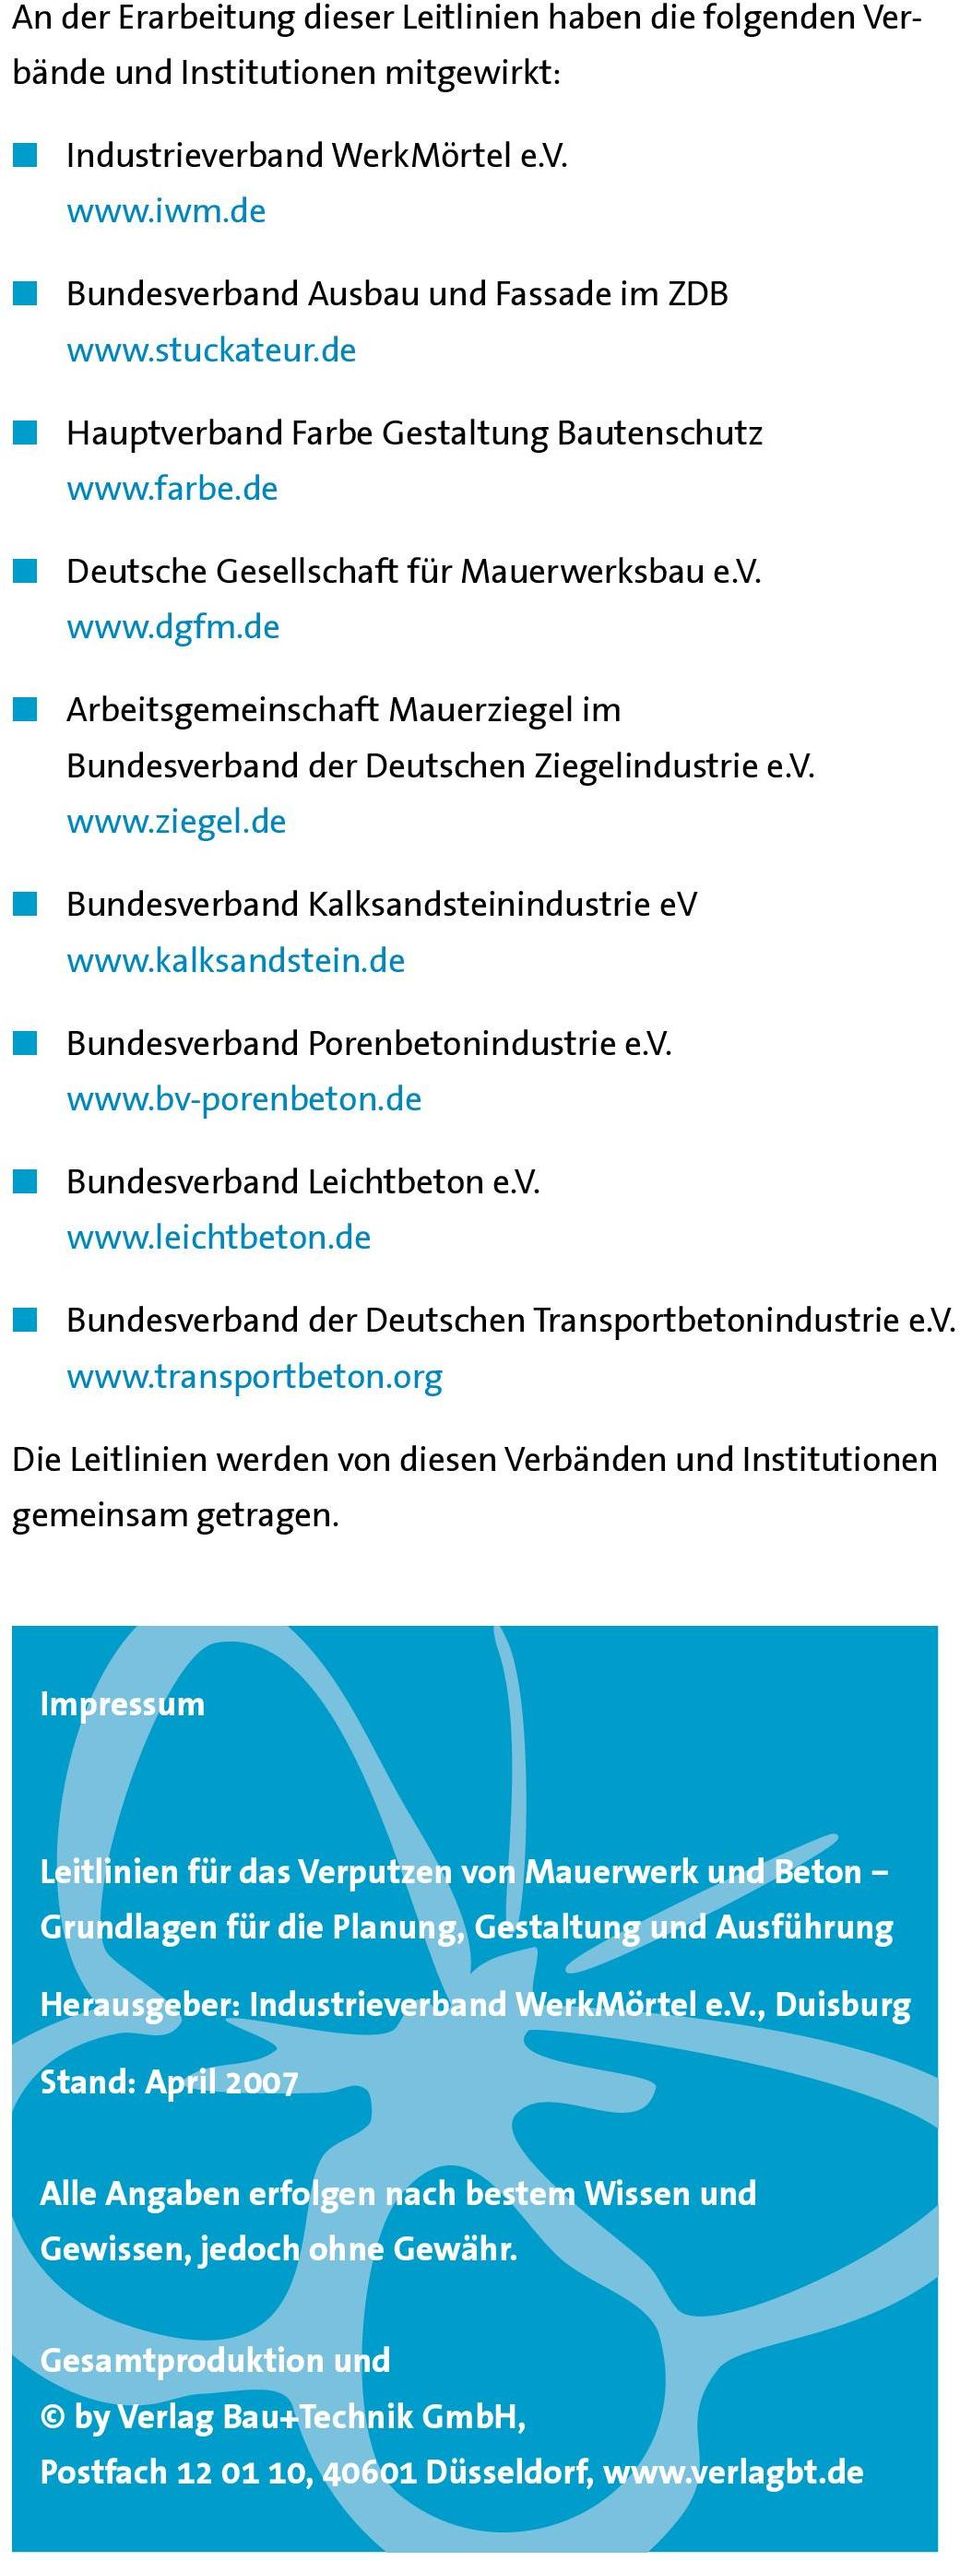 kalksandstein.de Bundesverband Porenbetonindustrie e.v. www.bv-porenbeton.de Bundesverband Leichtbeton e.v. www.leichtbeton.de Bundesverband der Deutschen Transportbetonindustrie e.v. www.transportbeton.